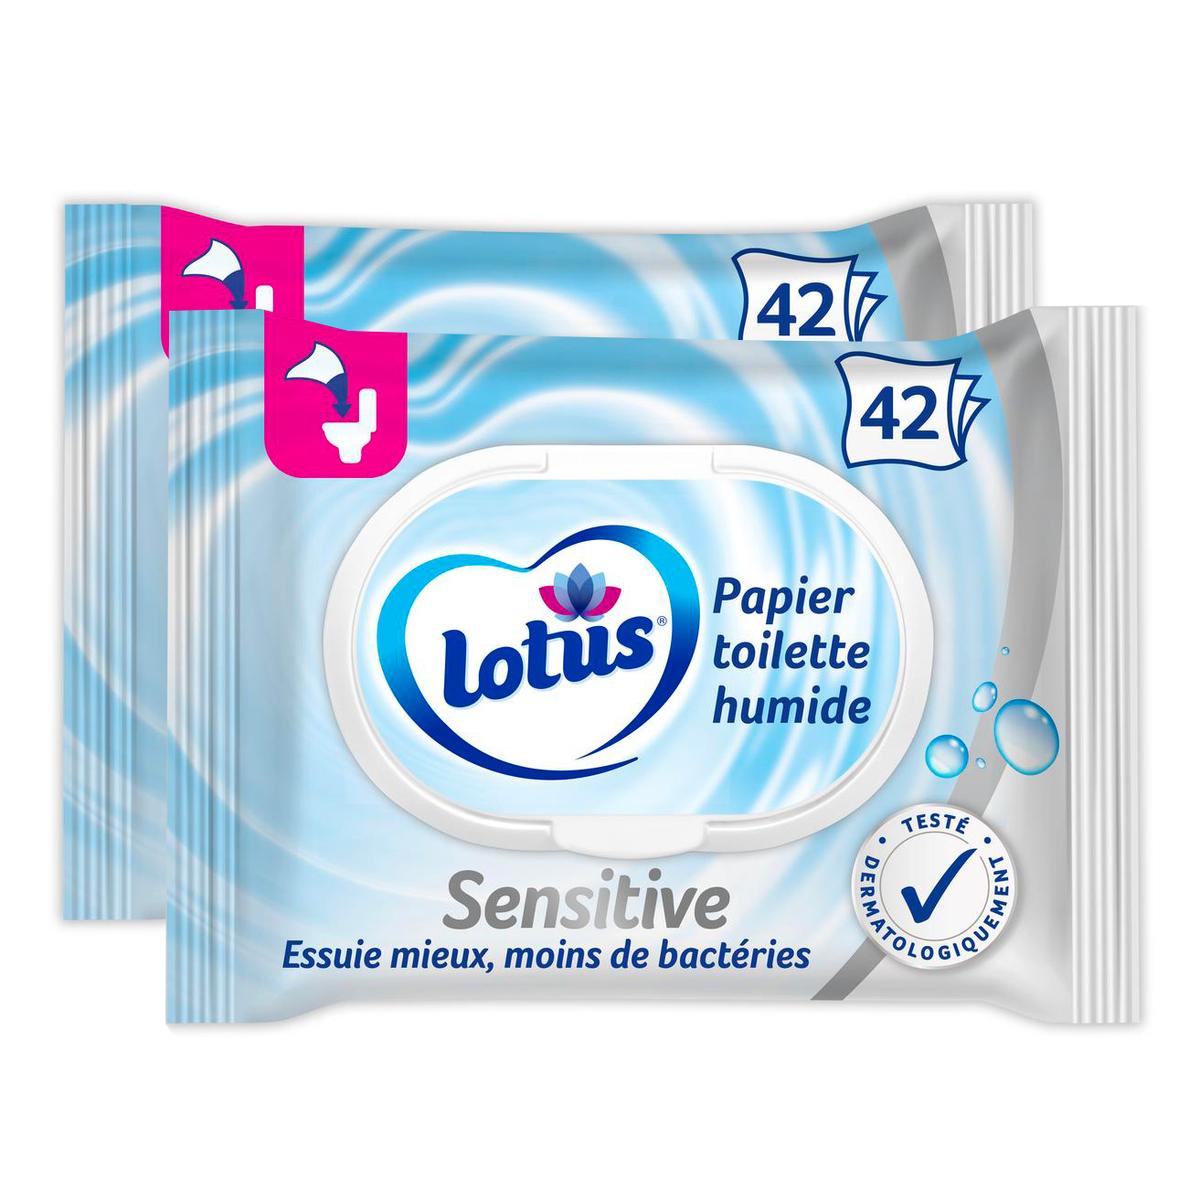 Acheter Lotus Papier toilette - Pure Natural Ecolabel, 6 rouleaux